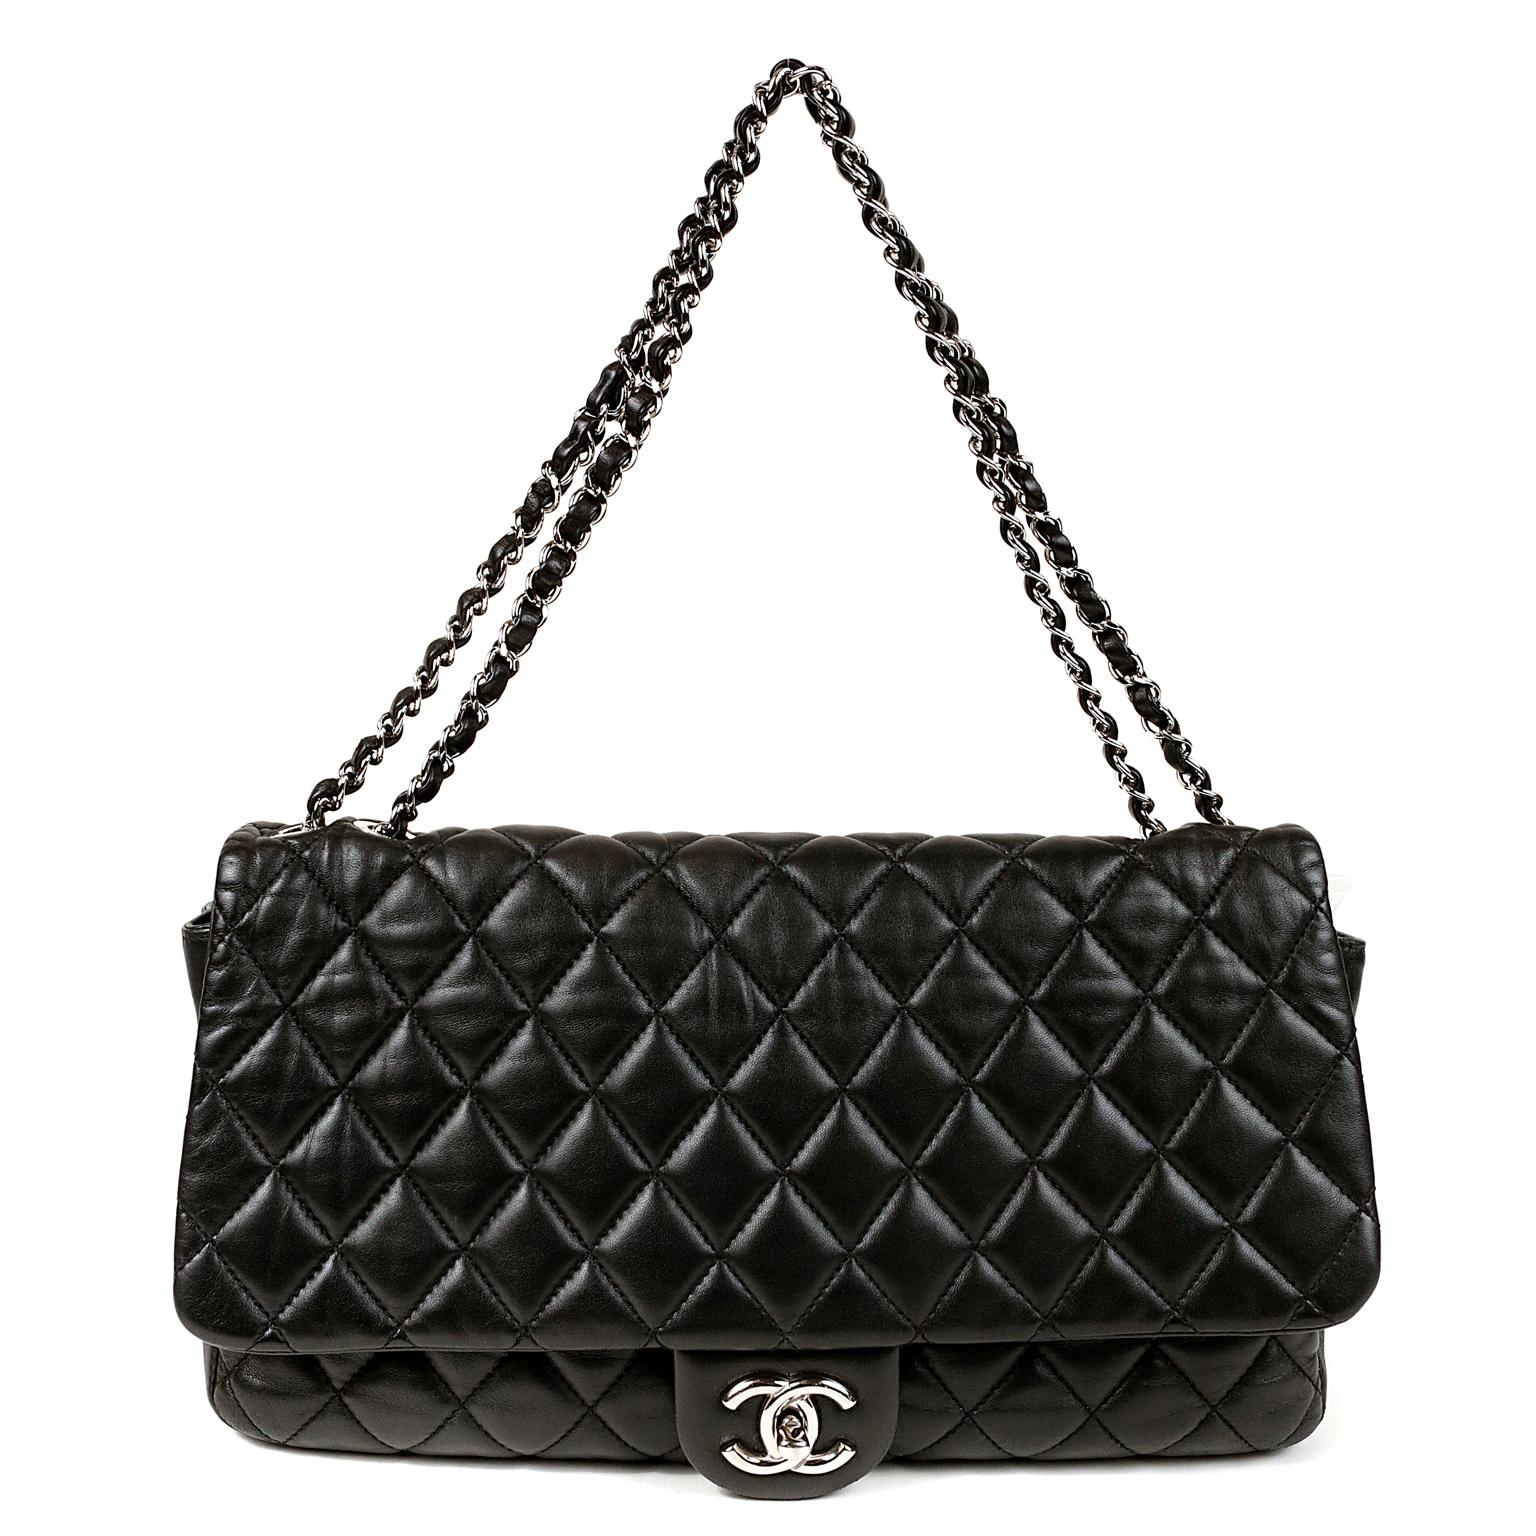 Chanel Black Leather Jumbo Coco Rain Flap Bag- MINT CONDITION
 Aus der Paris Shanghai Collection:: hat diese geniale klassische Klappe einen angebrachten Regenmantel in der hinteren Tasche versteckt.  
Schwarzes Leder ist mit dem für Chanel